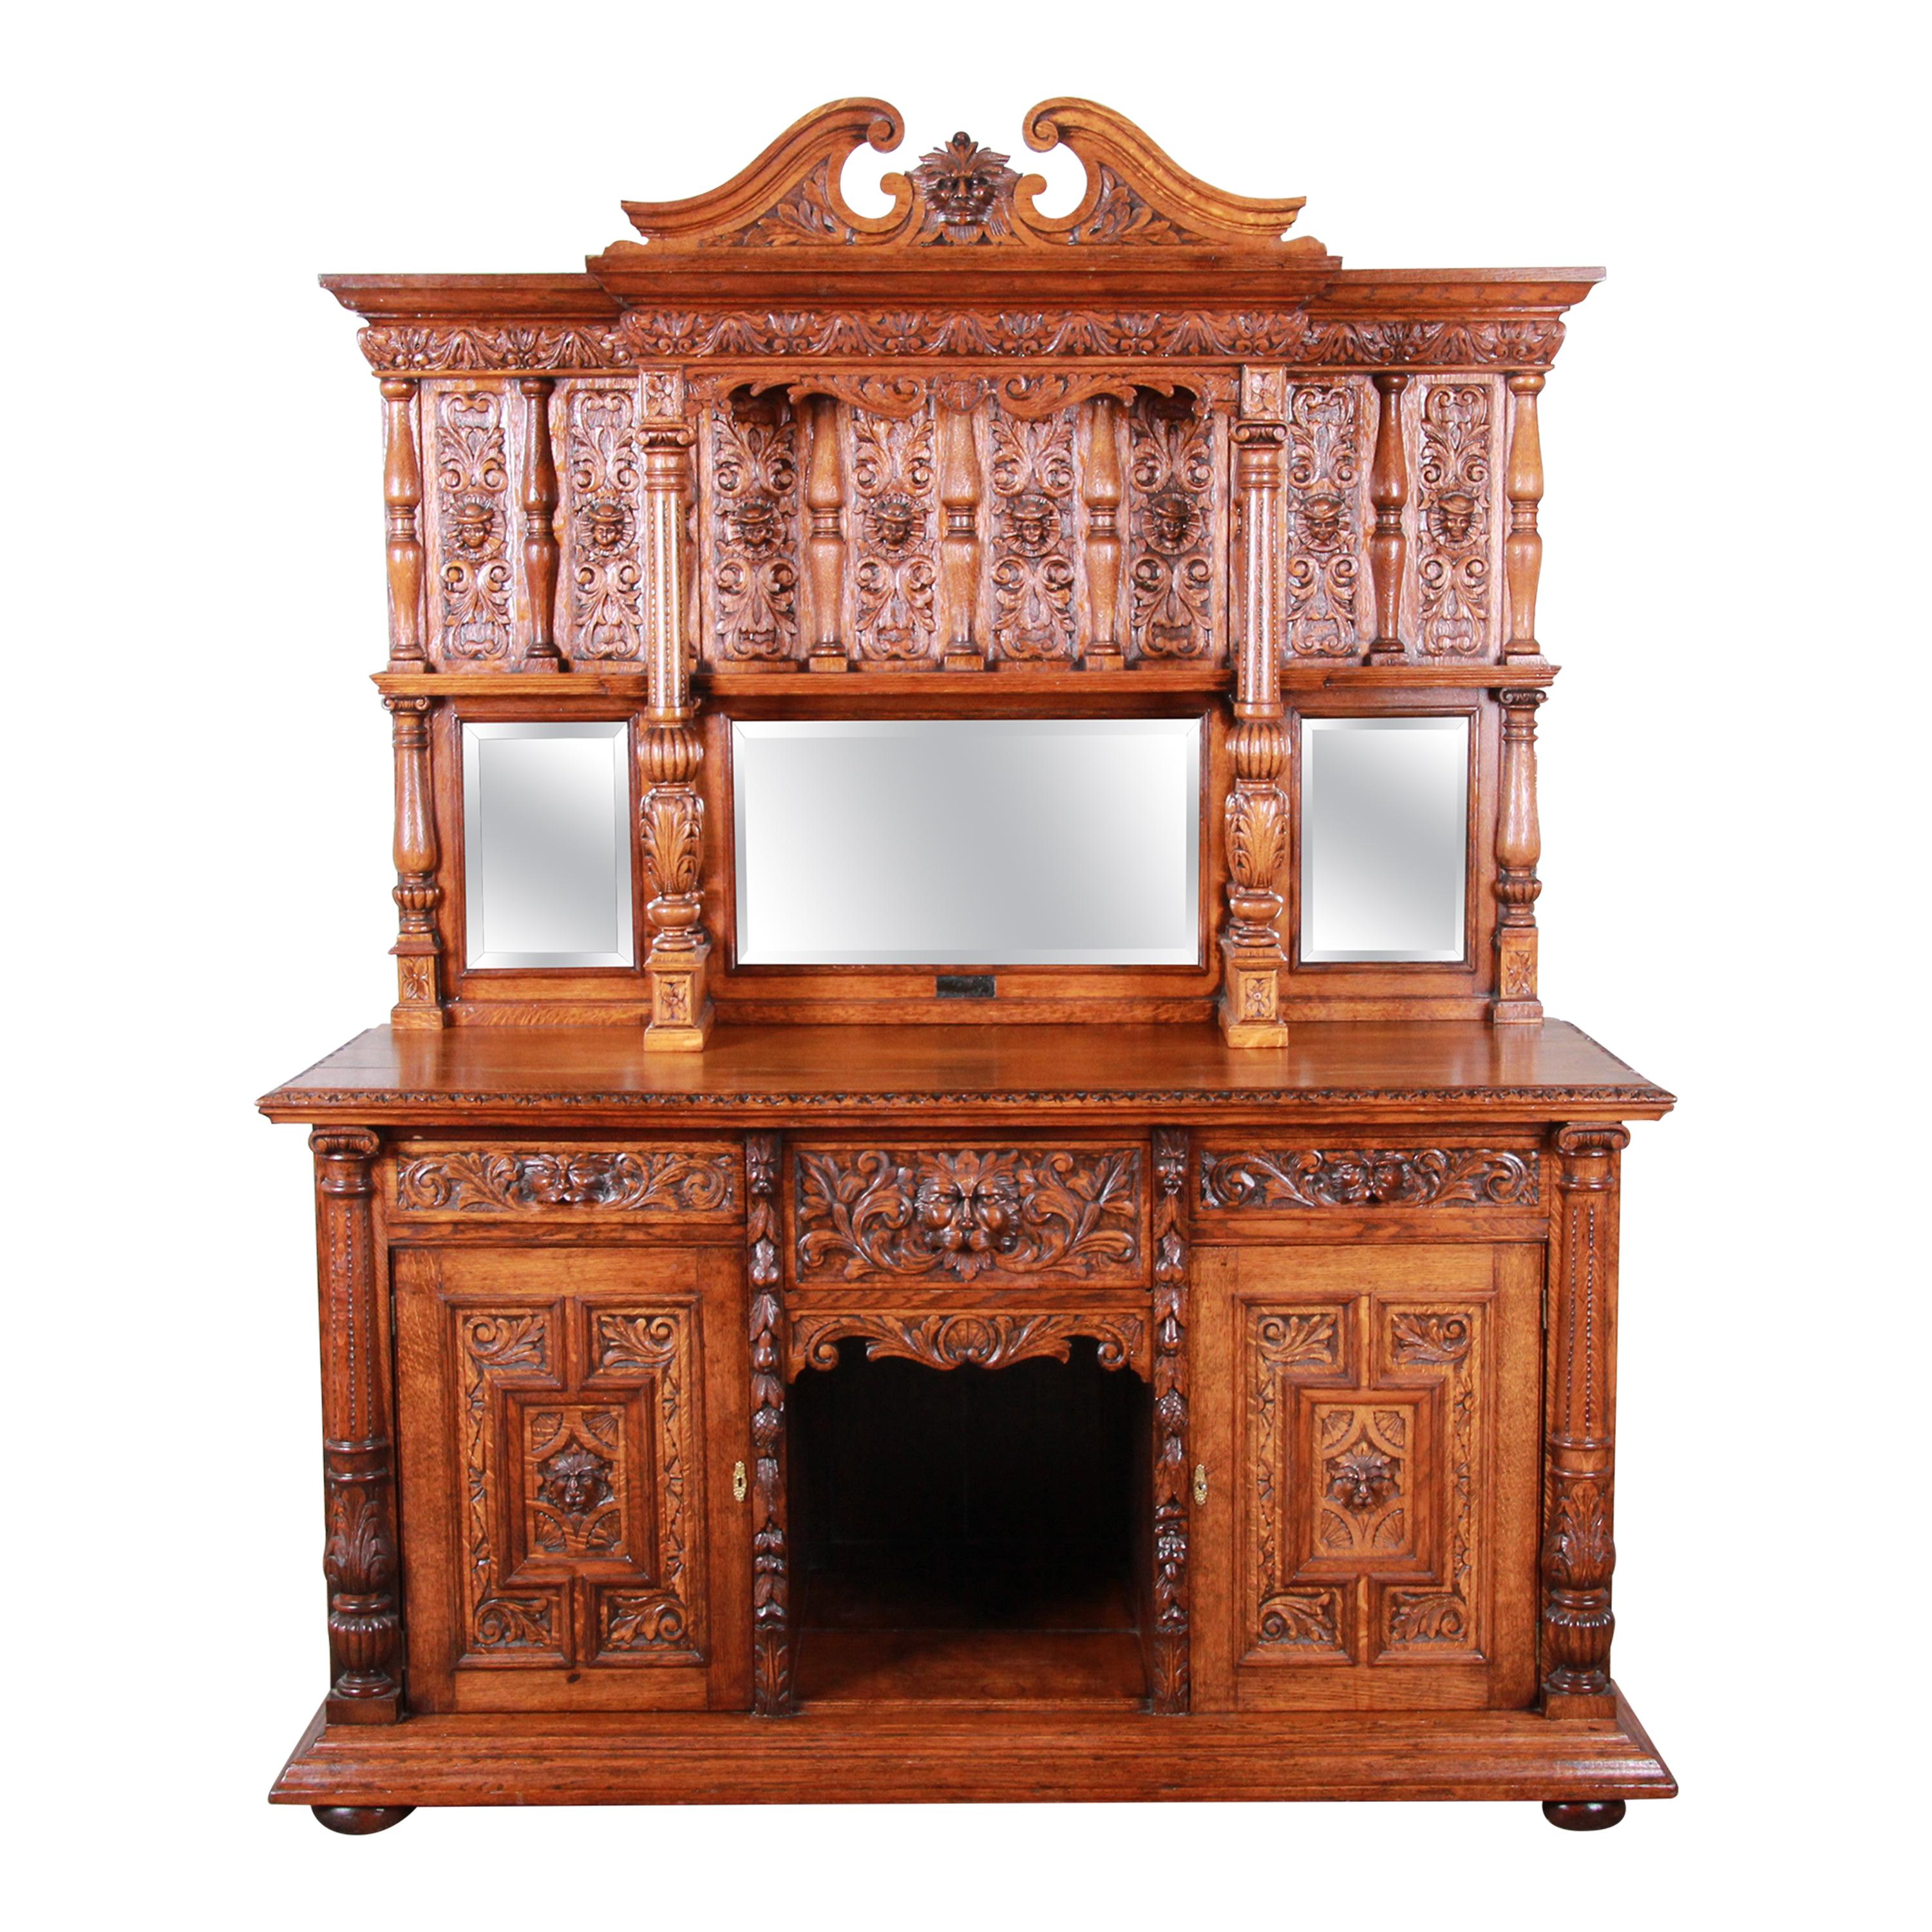 19th Century Ornate Carved Oak Back Bar or Sideboard Cabinet